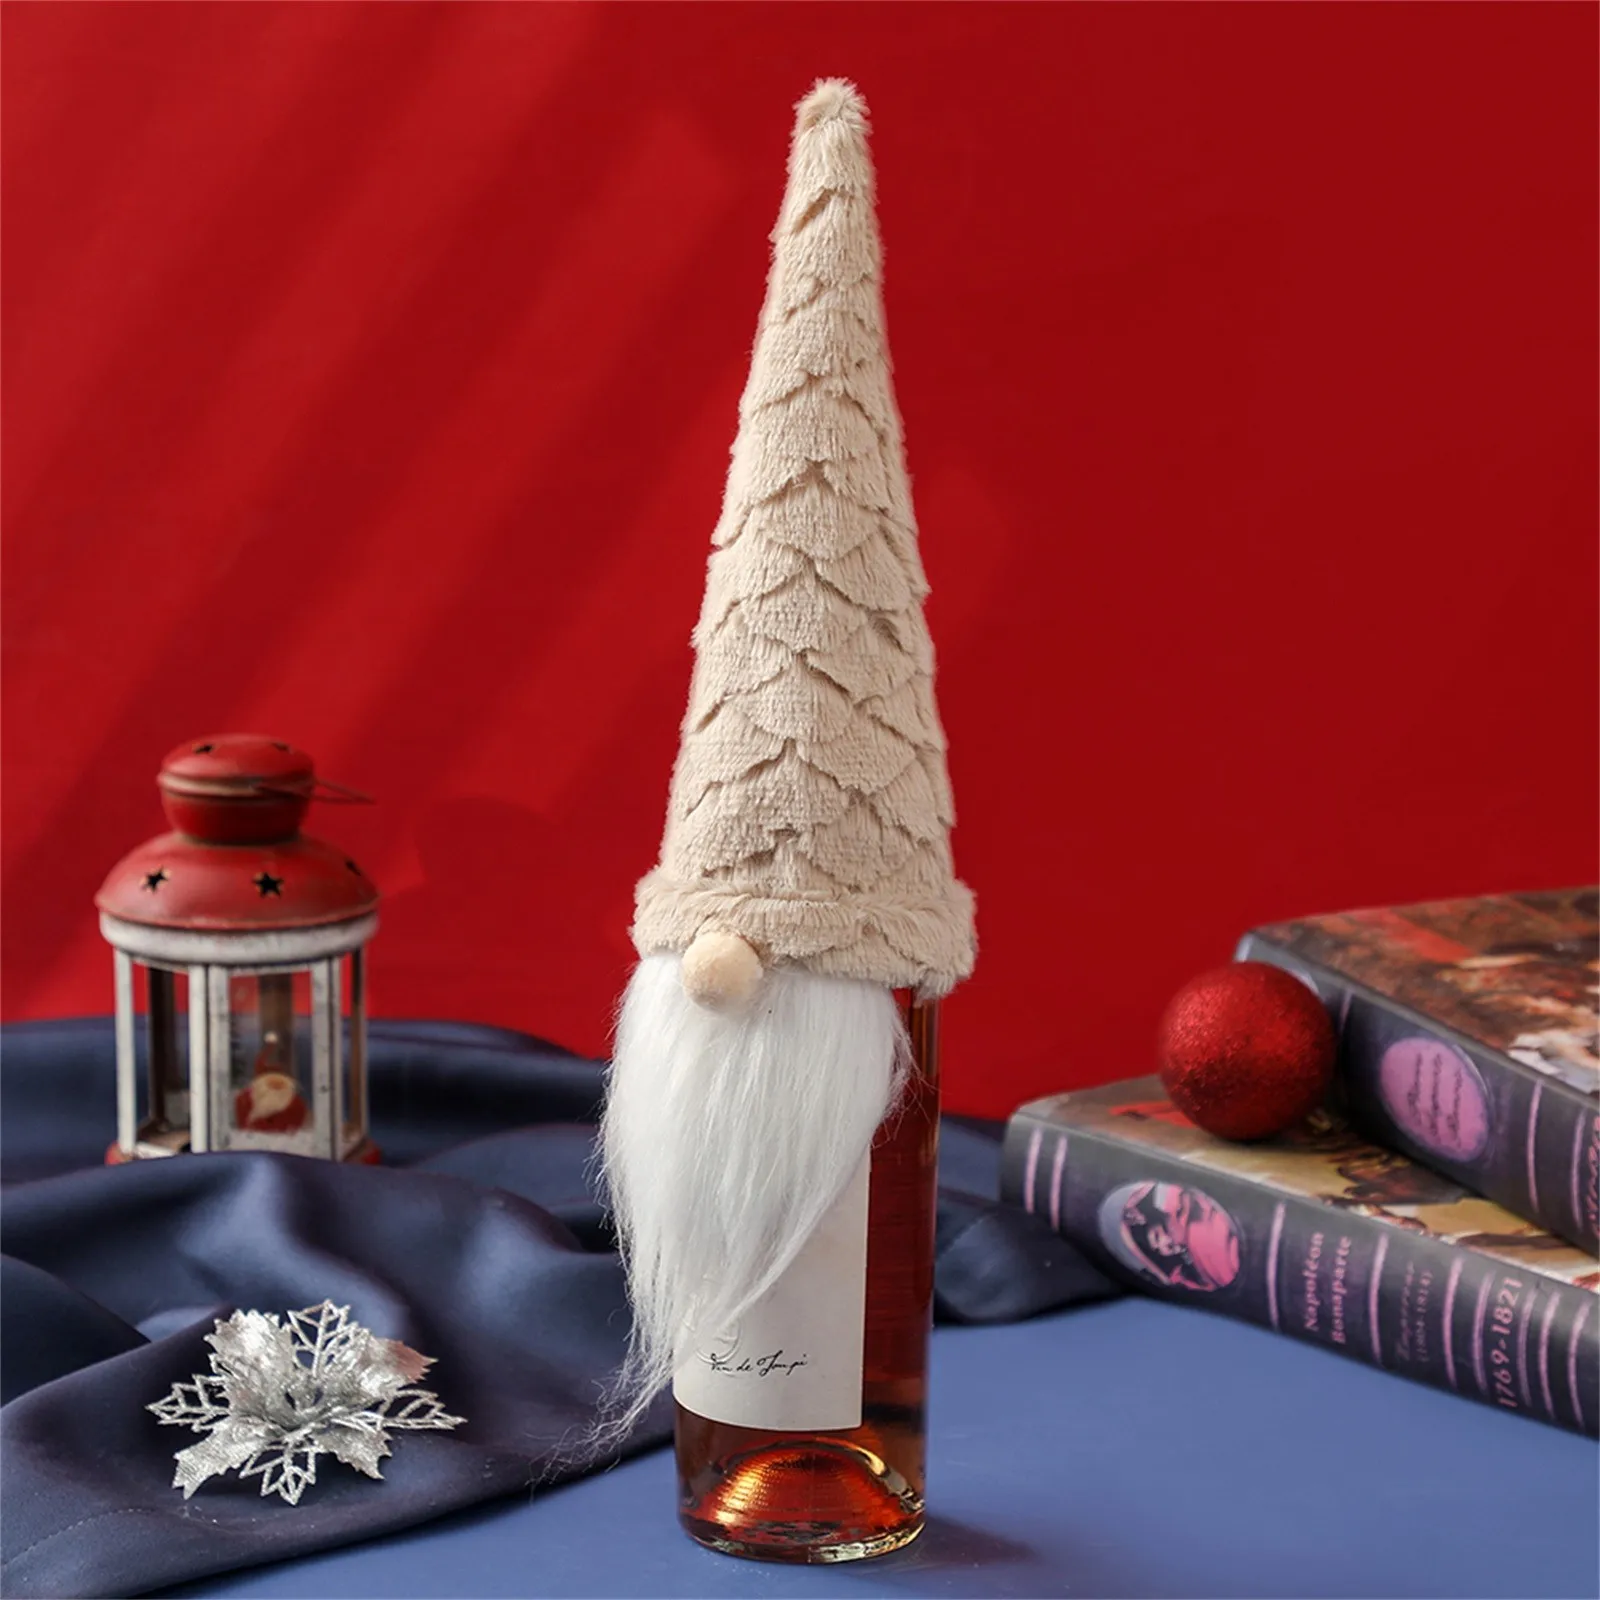 Kép /Karácsonyi-boros-üveg-fedelét-aranyos-gnome-arctalan-4-3271-thumb.jpg